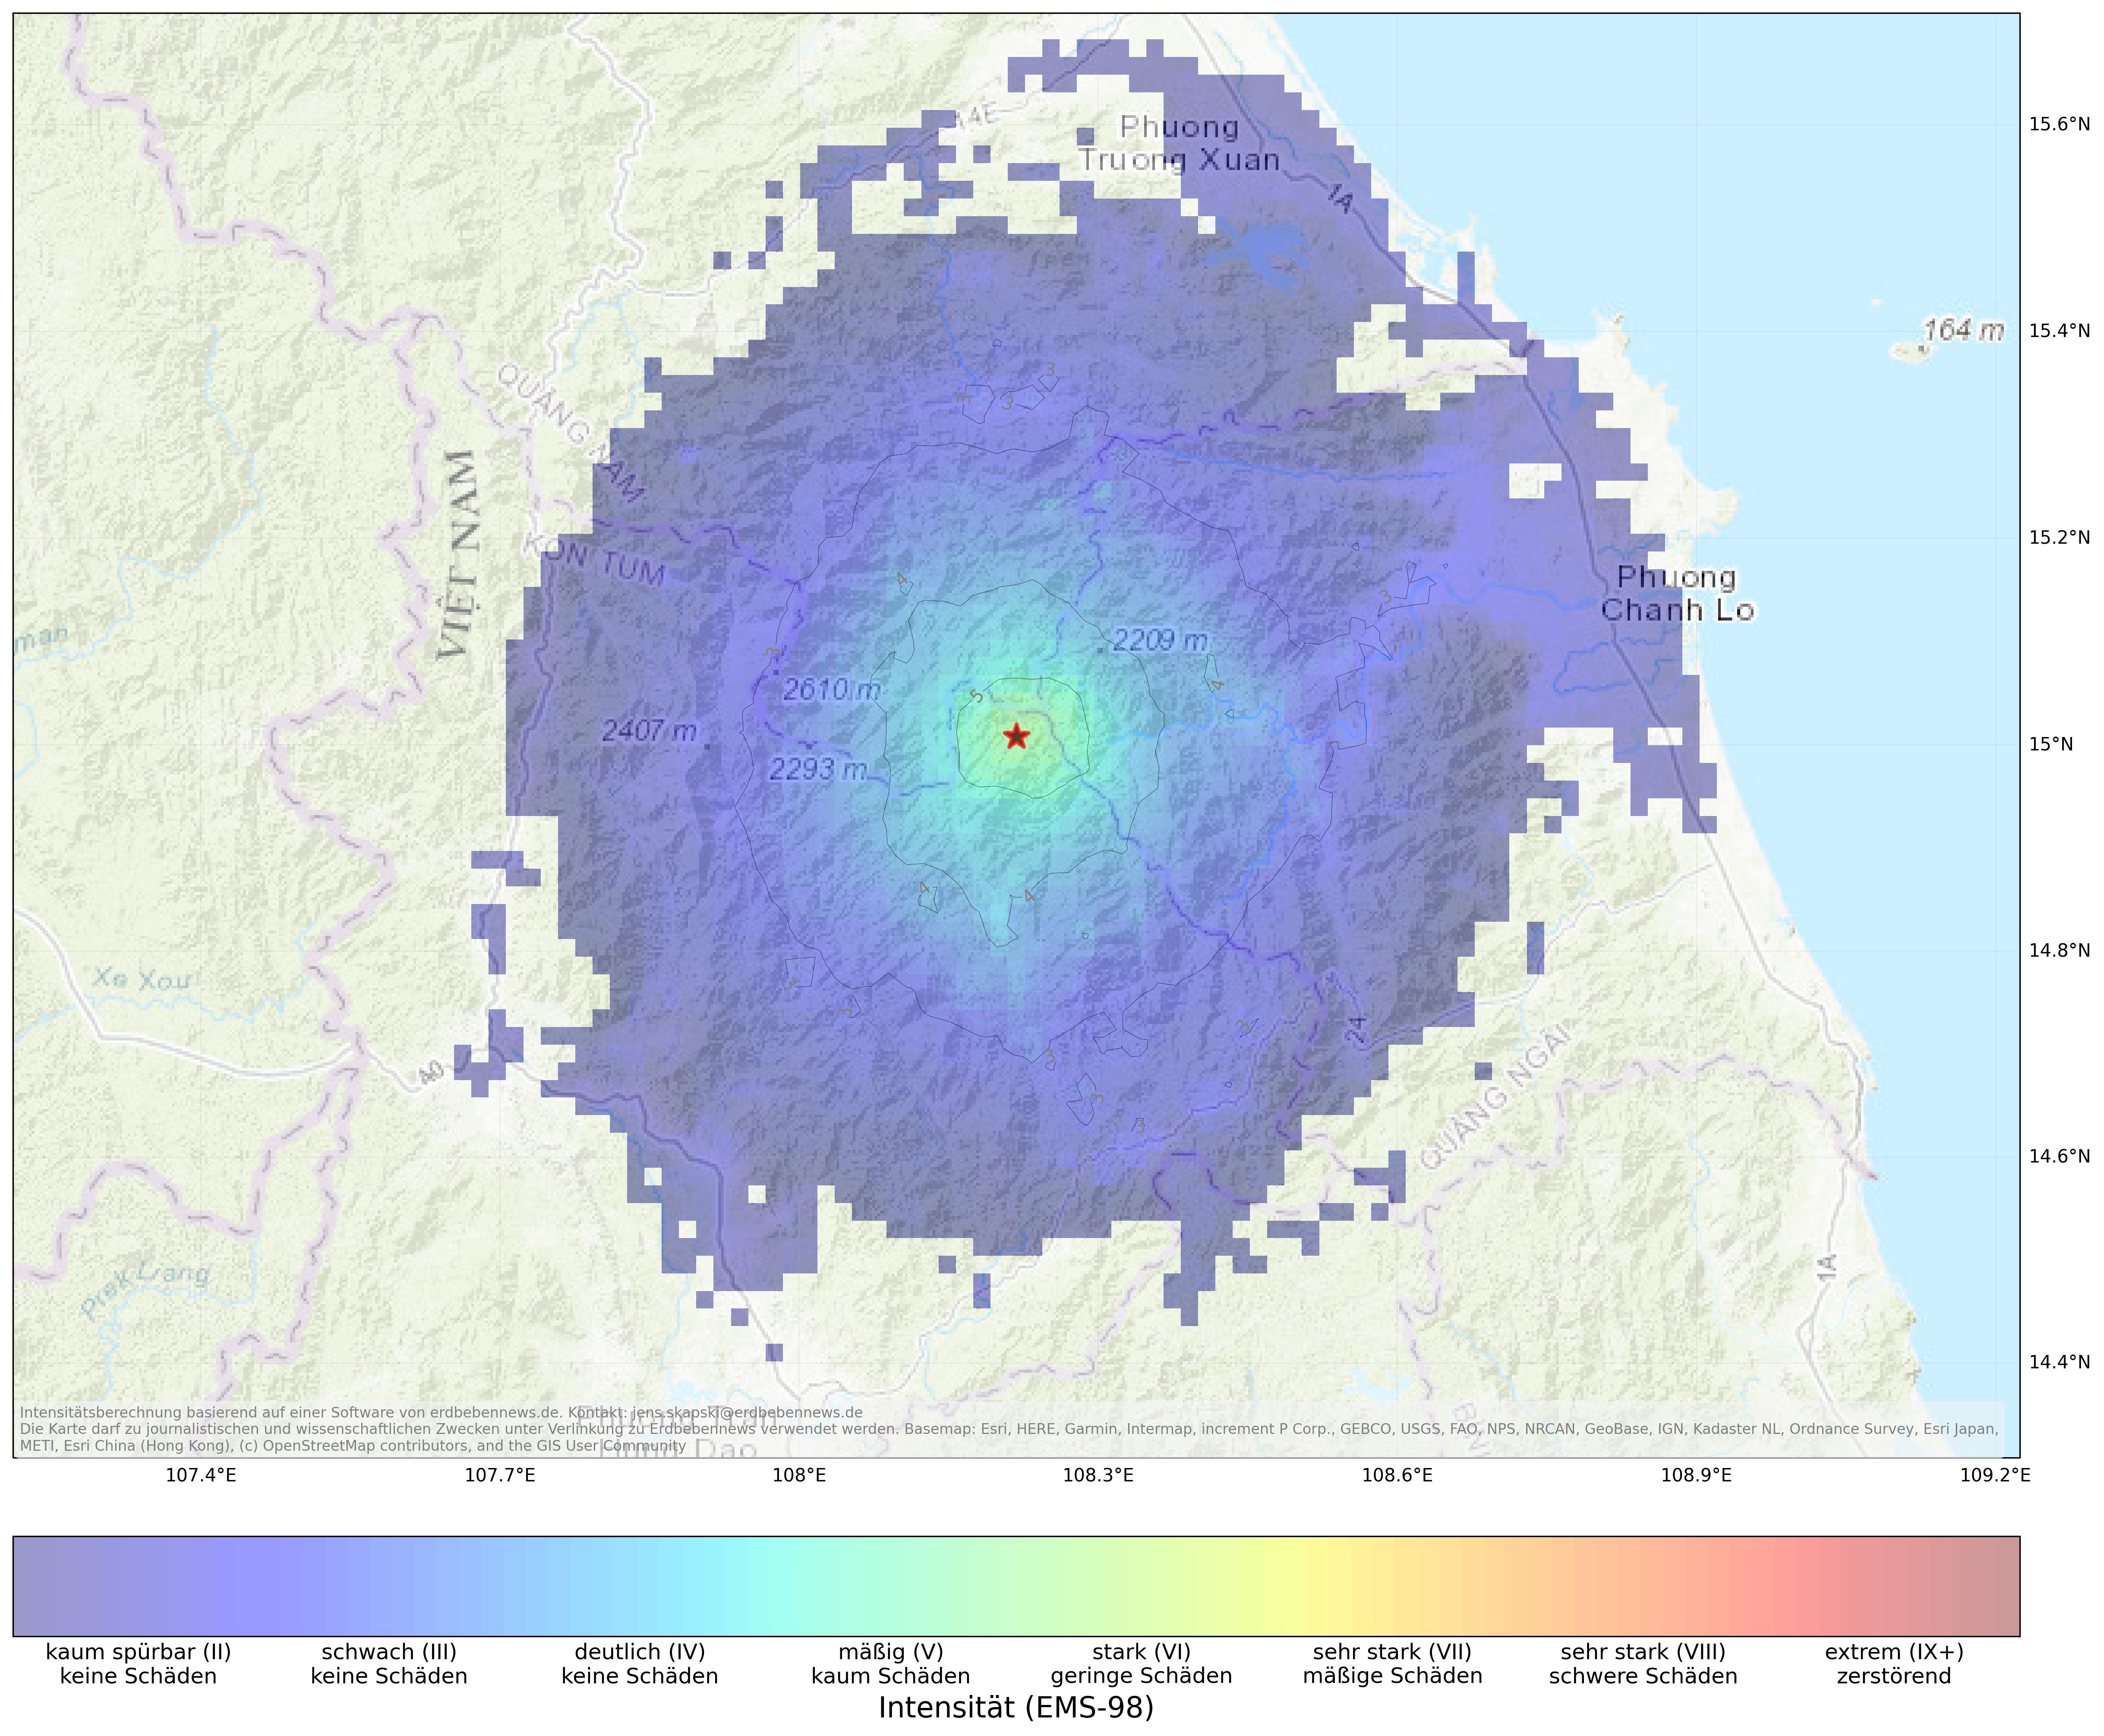 Berechnete Intensität (ShakeMap) des Erdbebens der Stärke 3.9 am 18. März, 16:52 Uhr in Vietnam